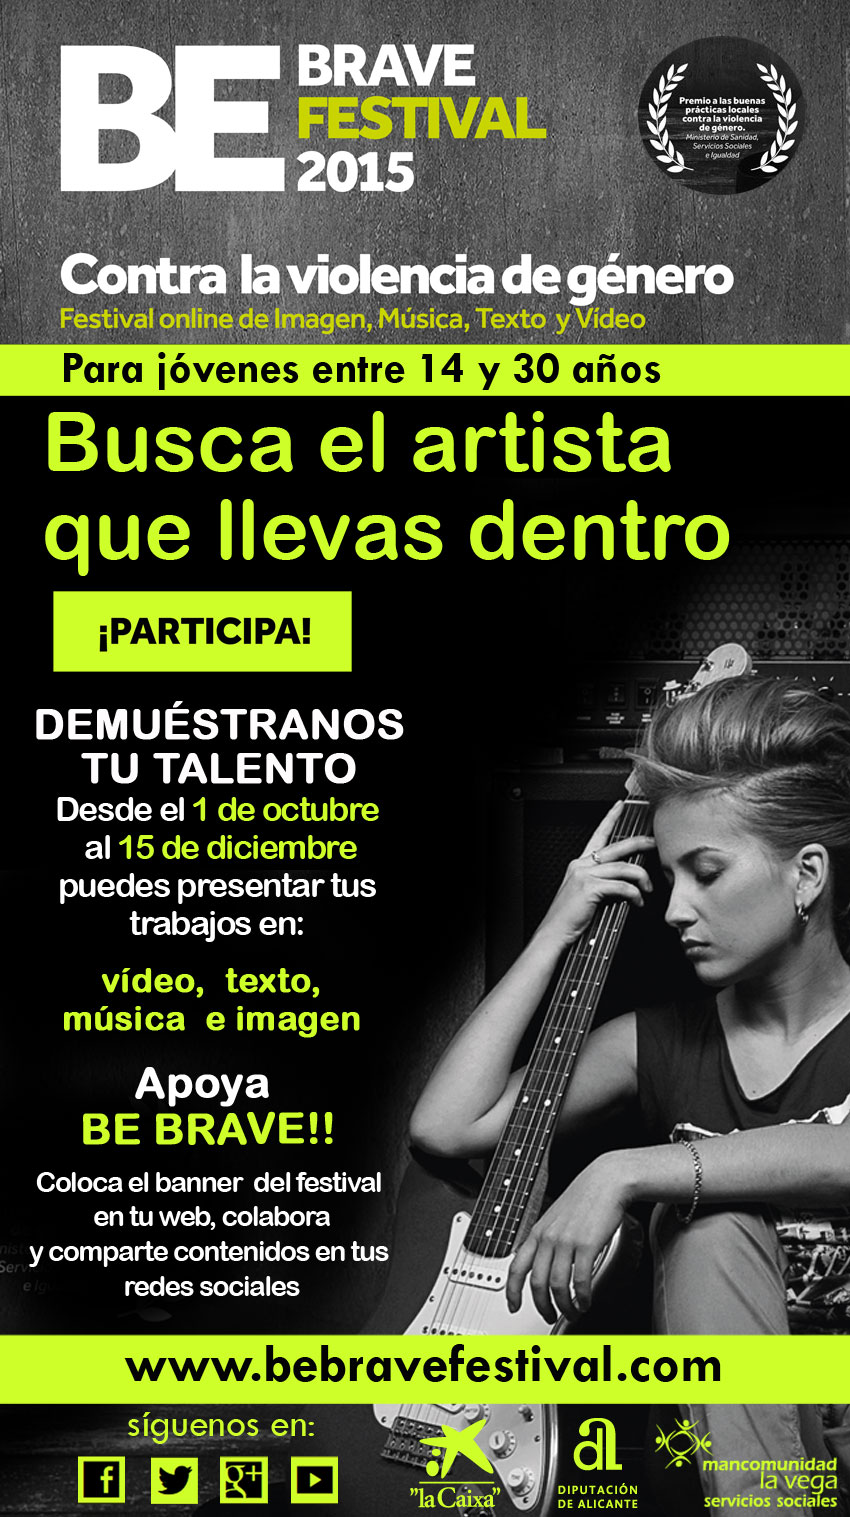 "Be brave festival 2015". Festival on line contra la violencia de género dirigido a jóvenes de 14 a 30 años.